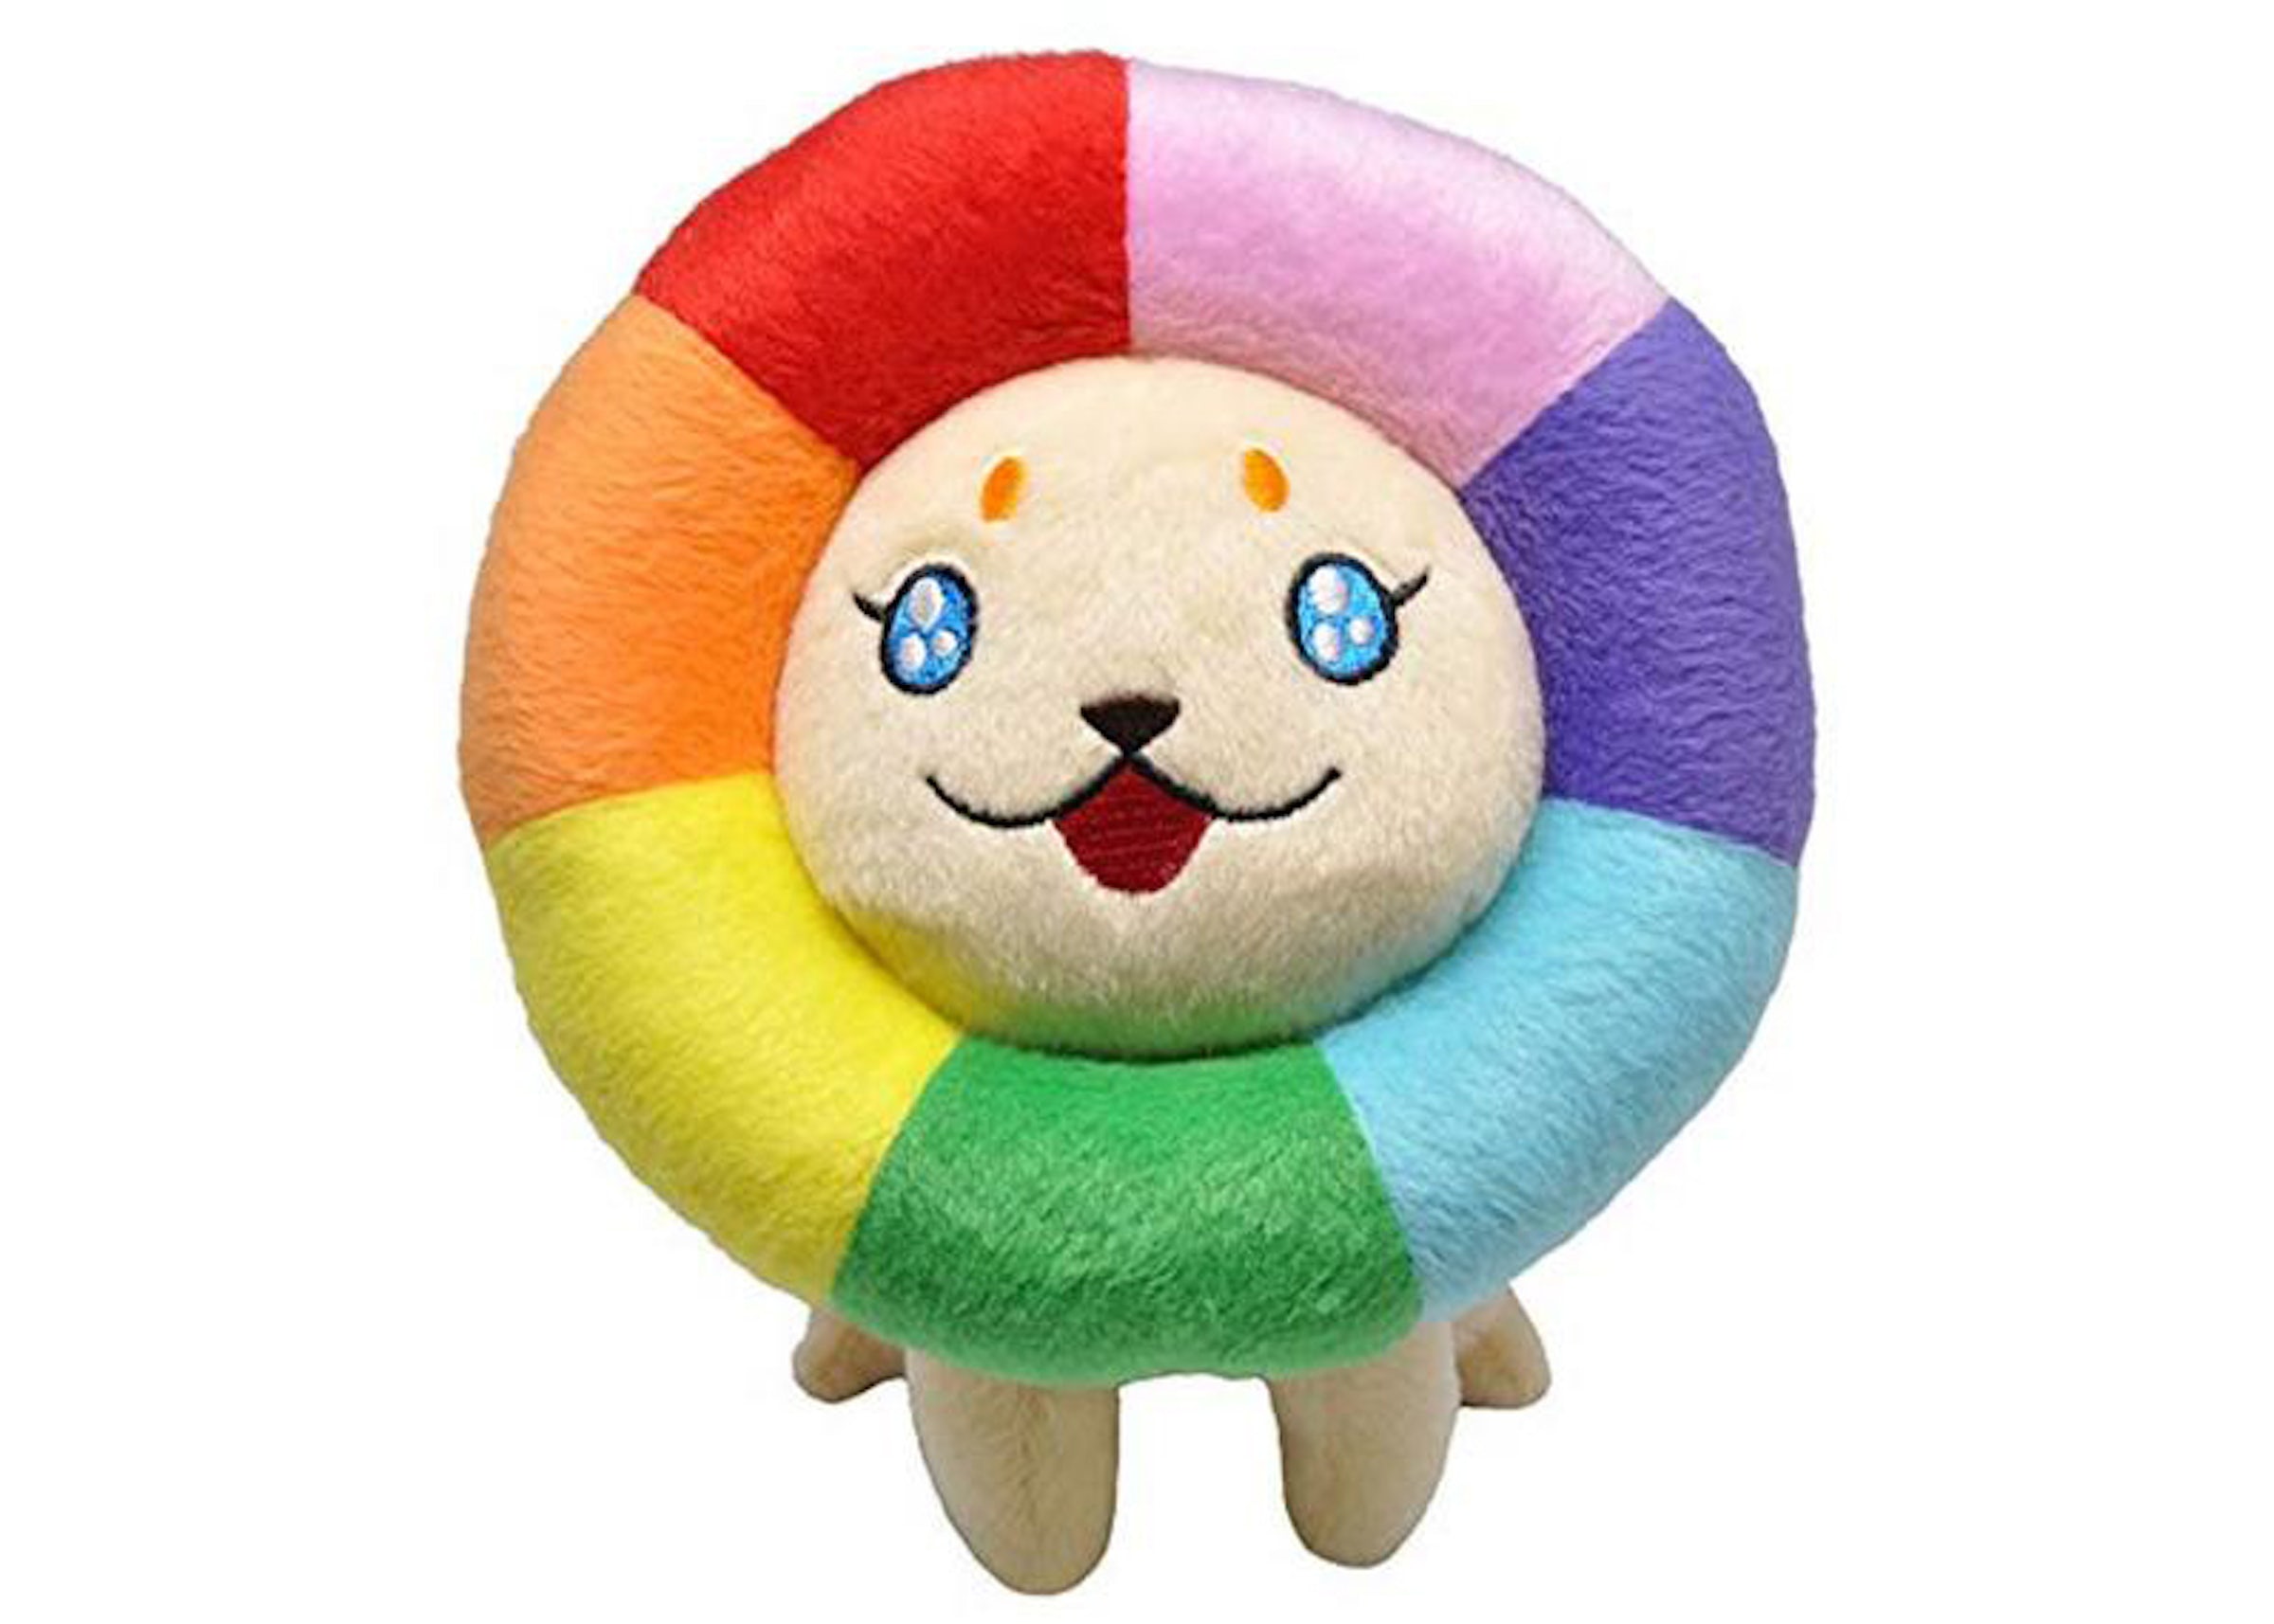 Мягкая плюшевая фигурка Takashi Murakami Yume Lion, мультиколор ударная бездна genshin 25 см плюшевая кукла плюшевая игрушка плюшевая игрушка мягкая фигурка набивная игрушка персонаж подушка детские пок